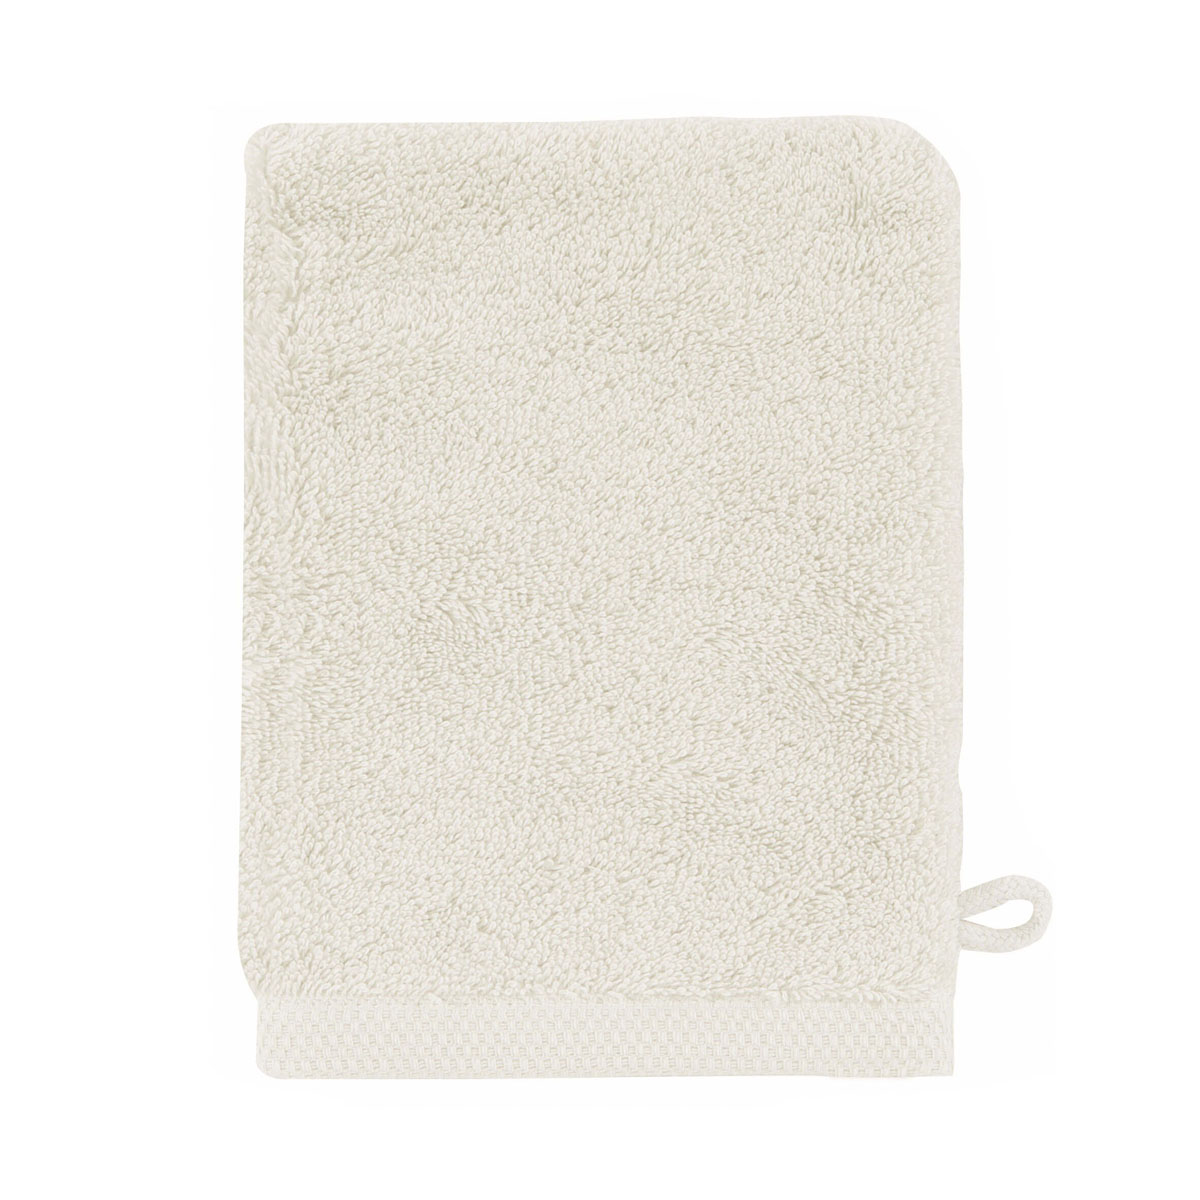 gant de toilette en coton blanc meringue 16x21